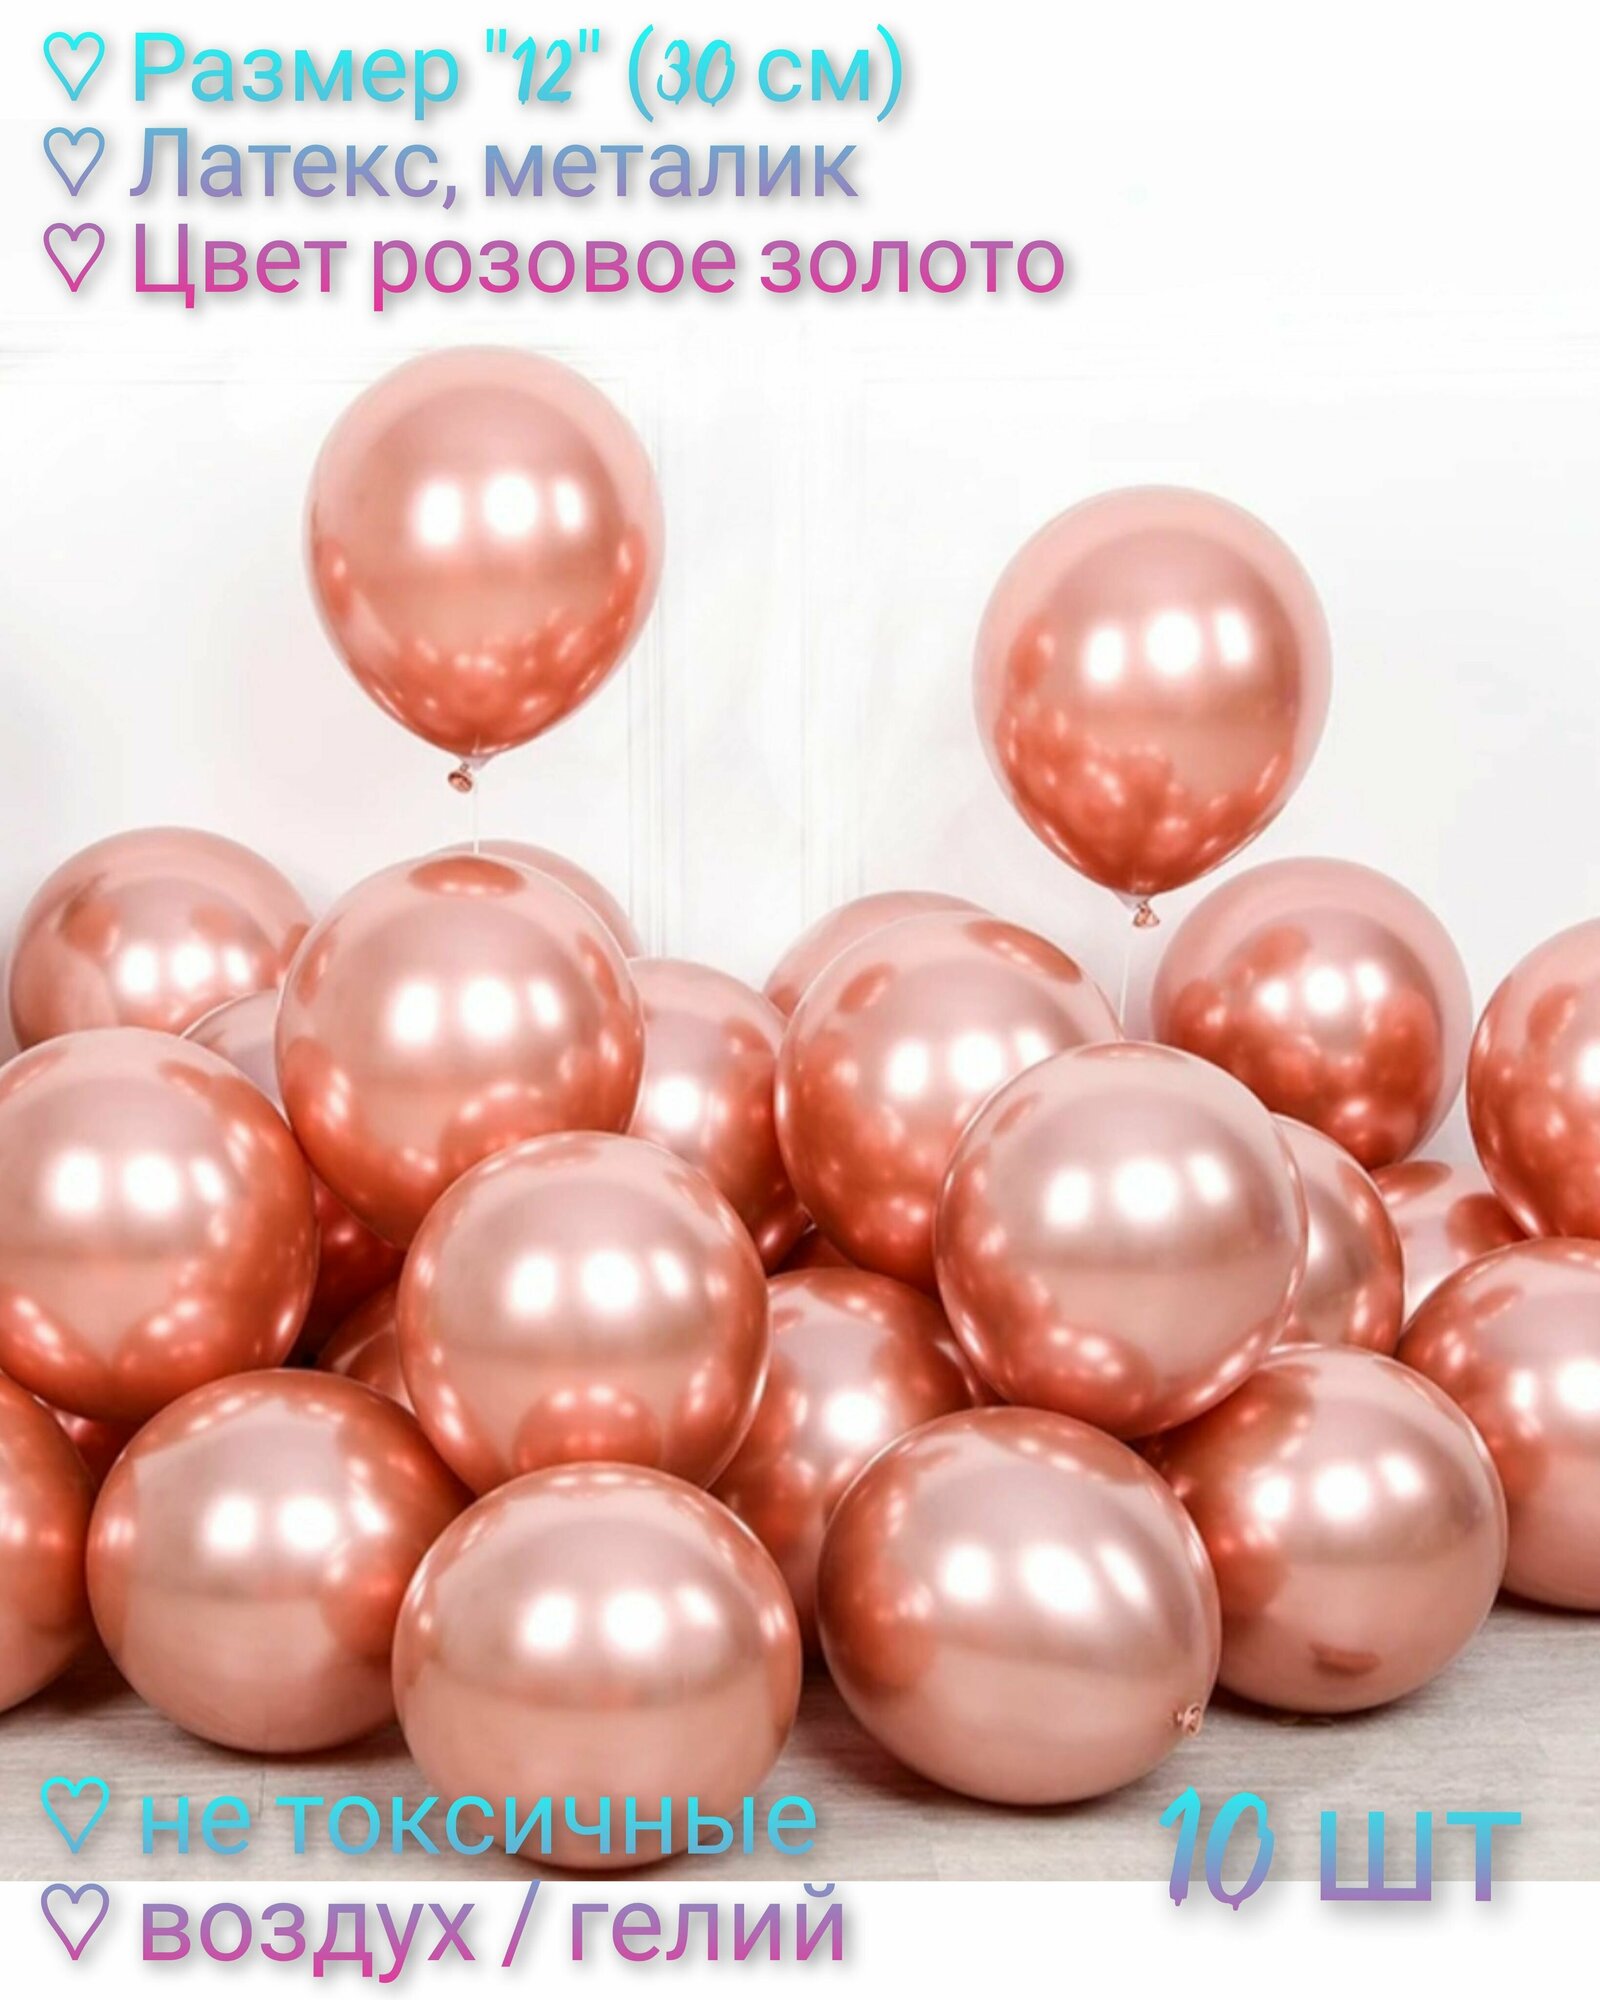 Набор воздушных шаров "12" (30 см), 10 шт, латекс, металлик, цвет розовое золото